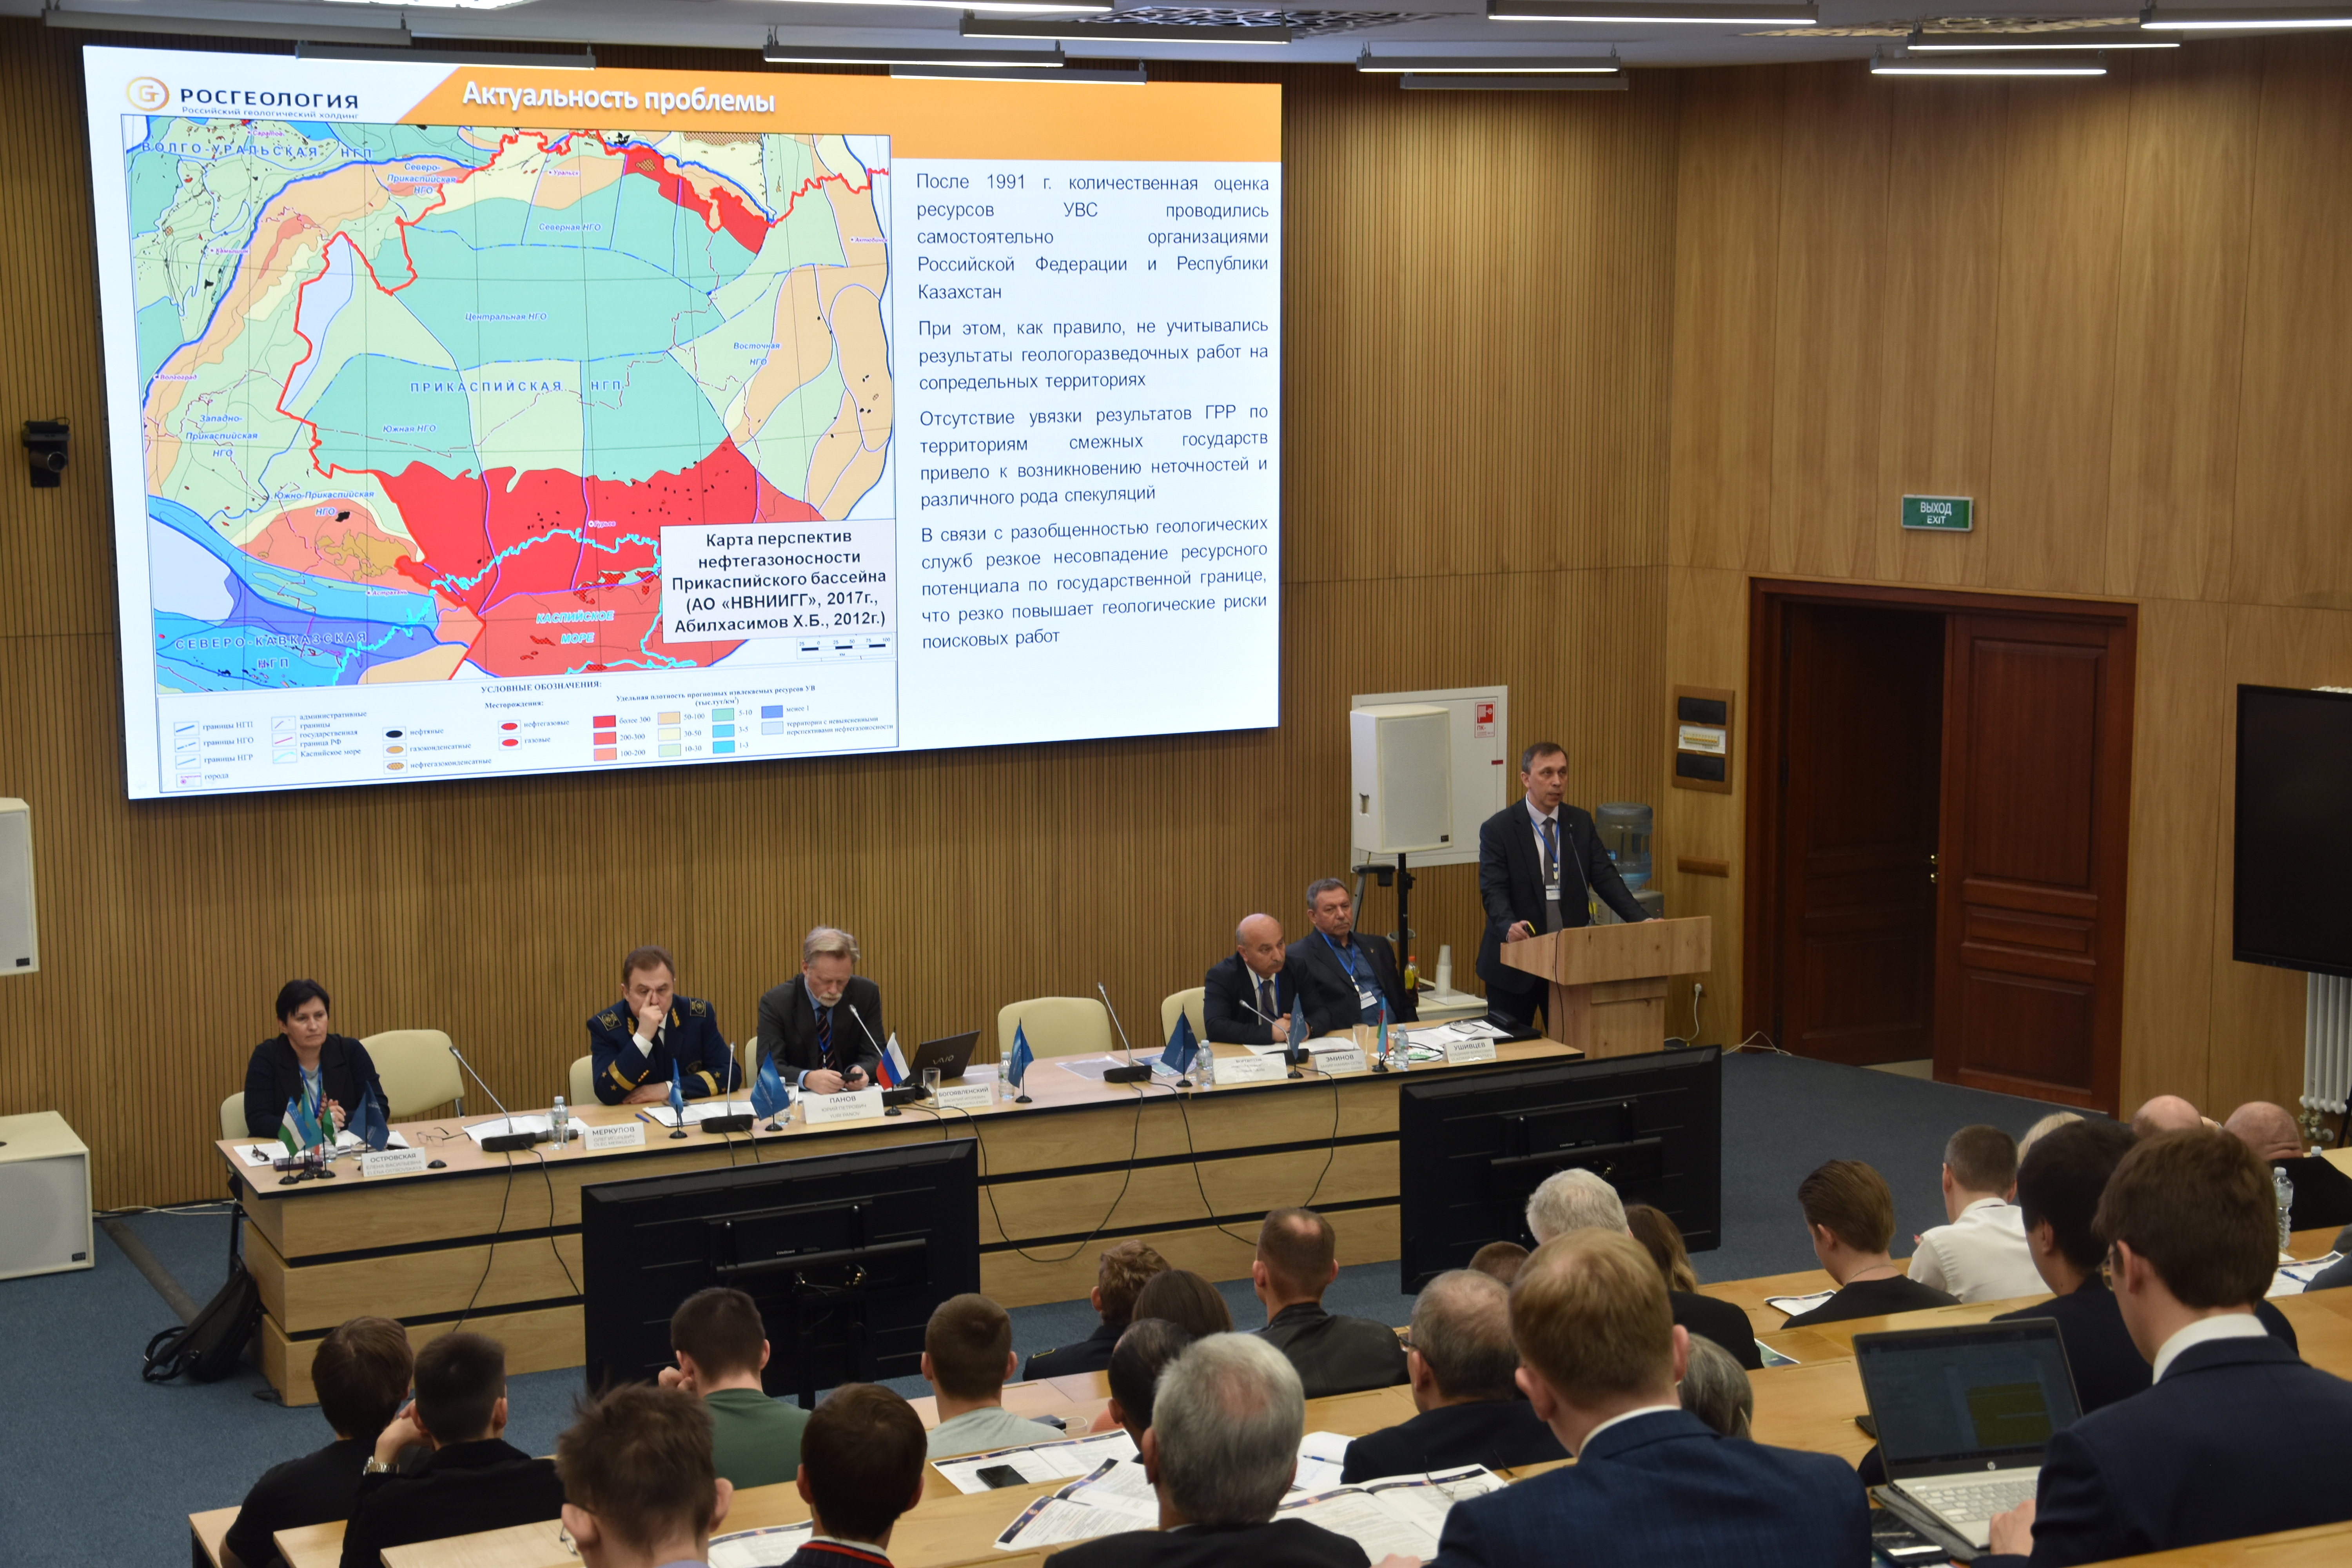 15-й Каспийский энергетический форум "Энергетический диалог в контексте обеспечения международной энергетической безопасности" 